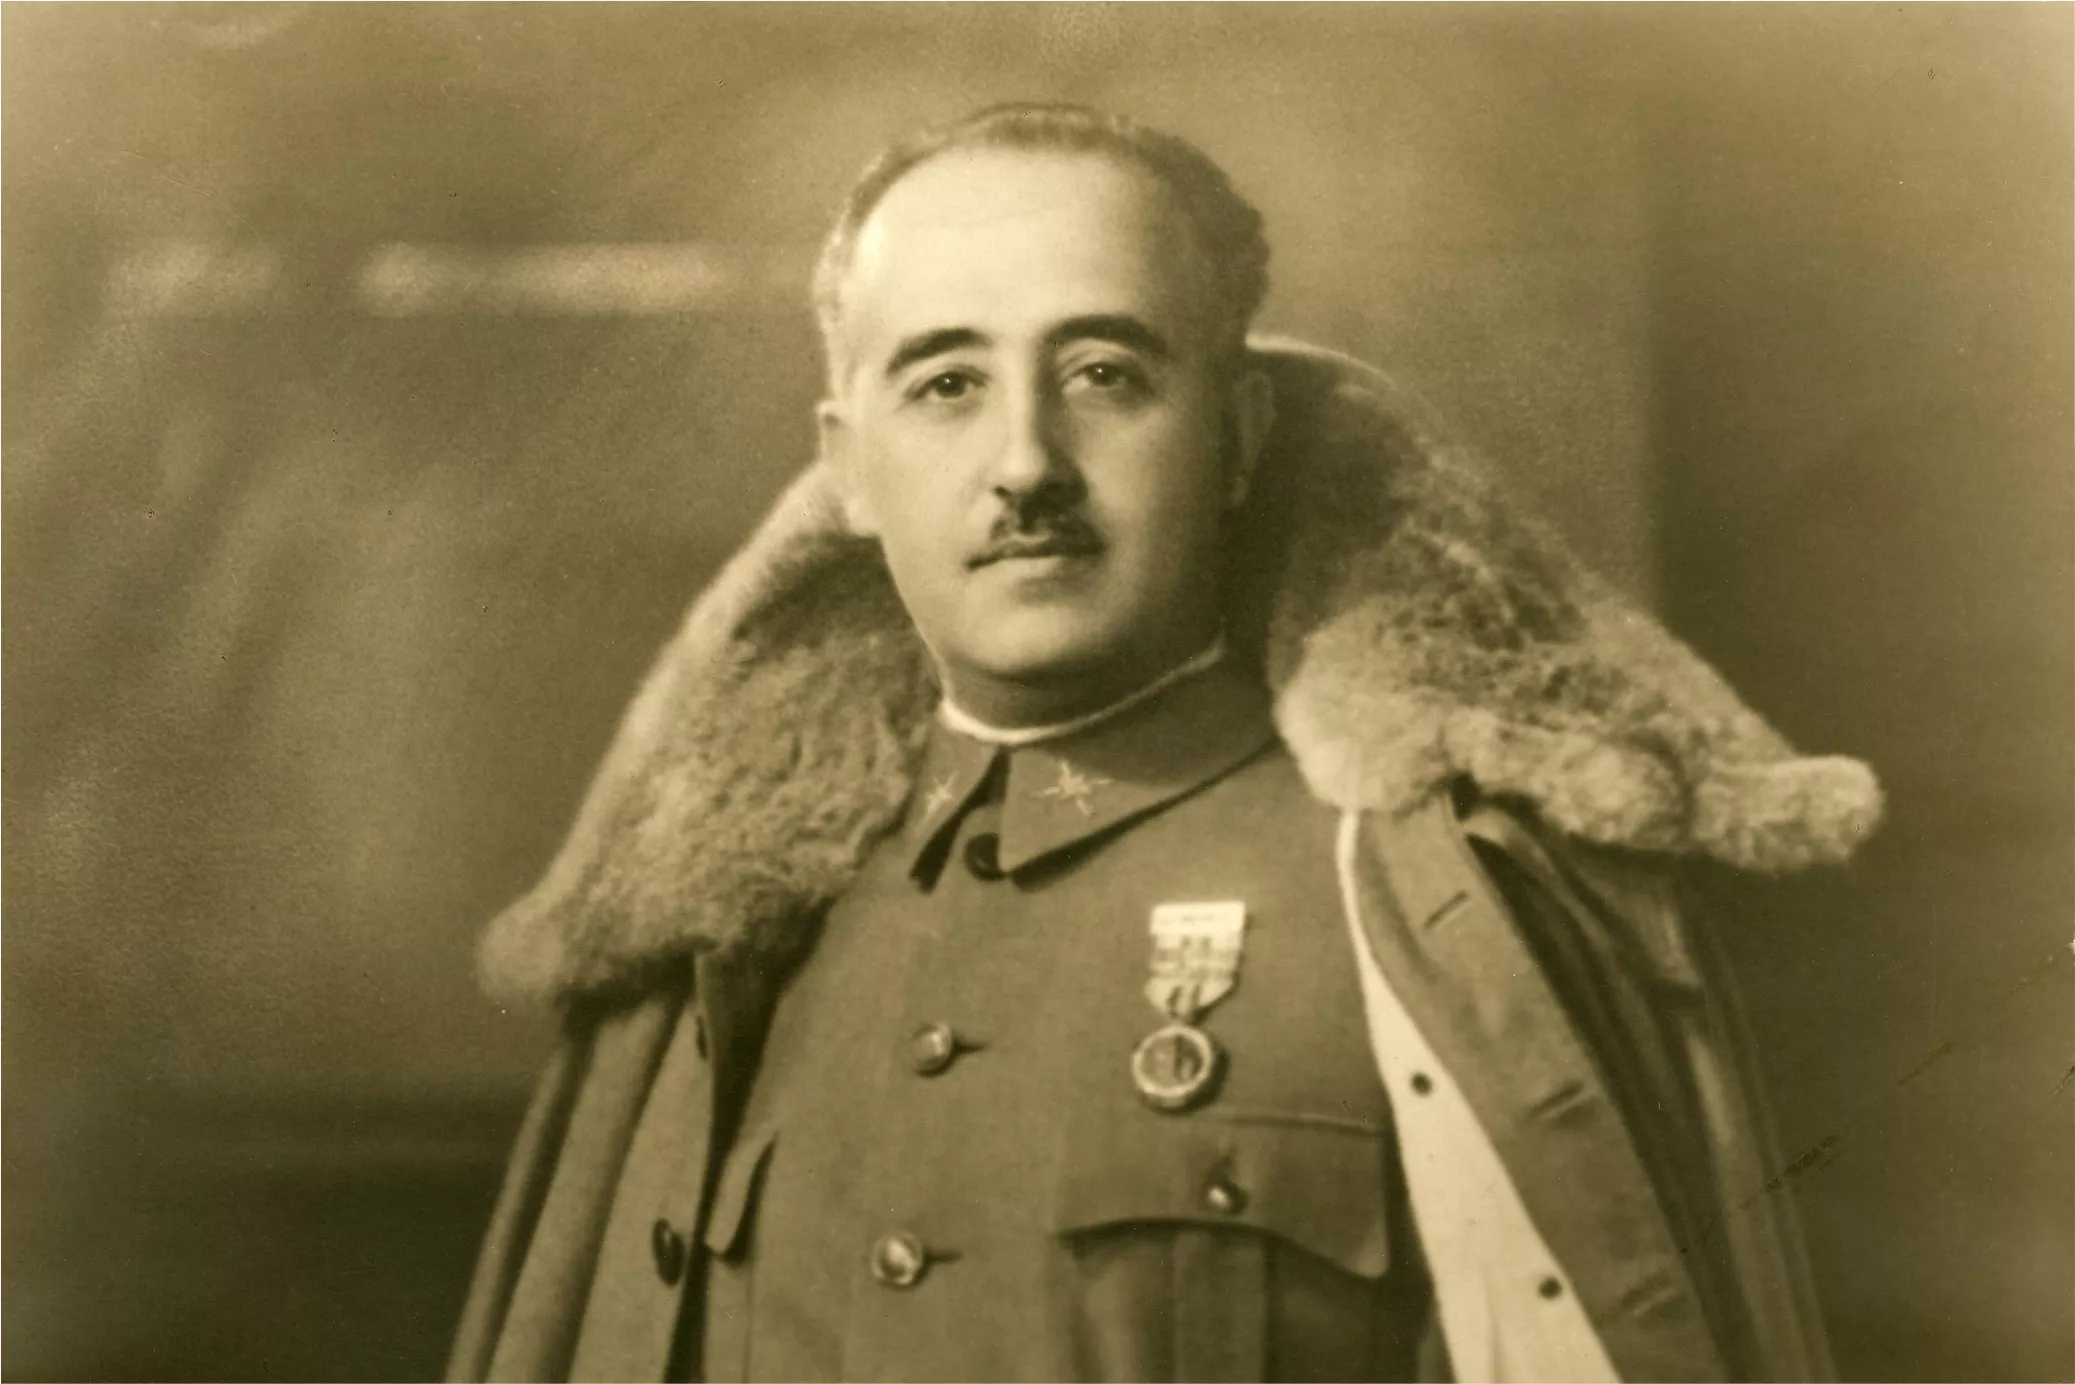 Retrat de Francisco Franco